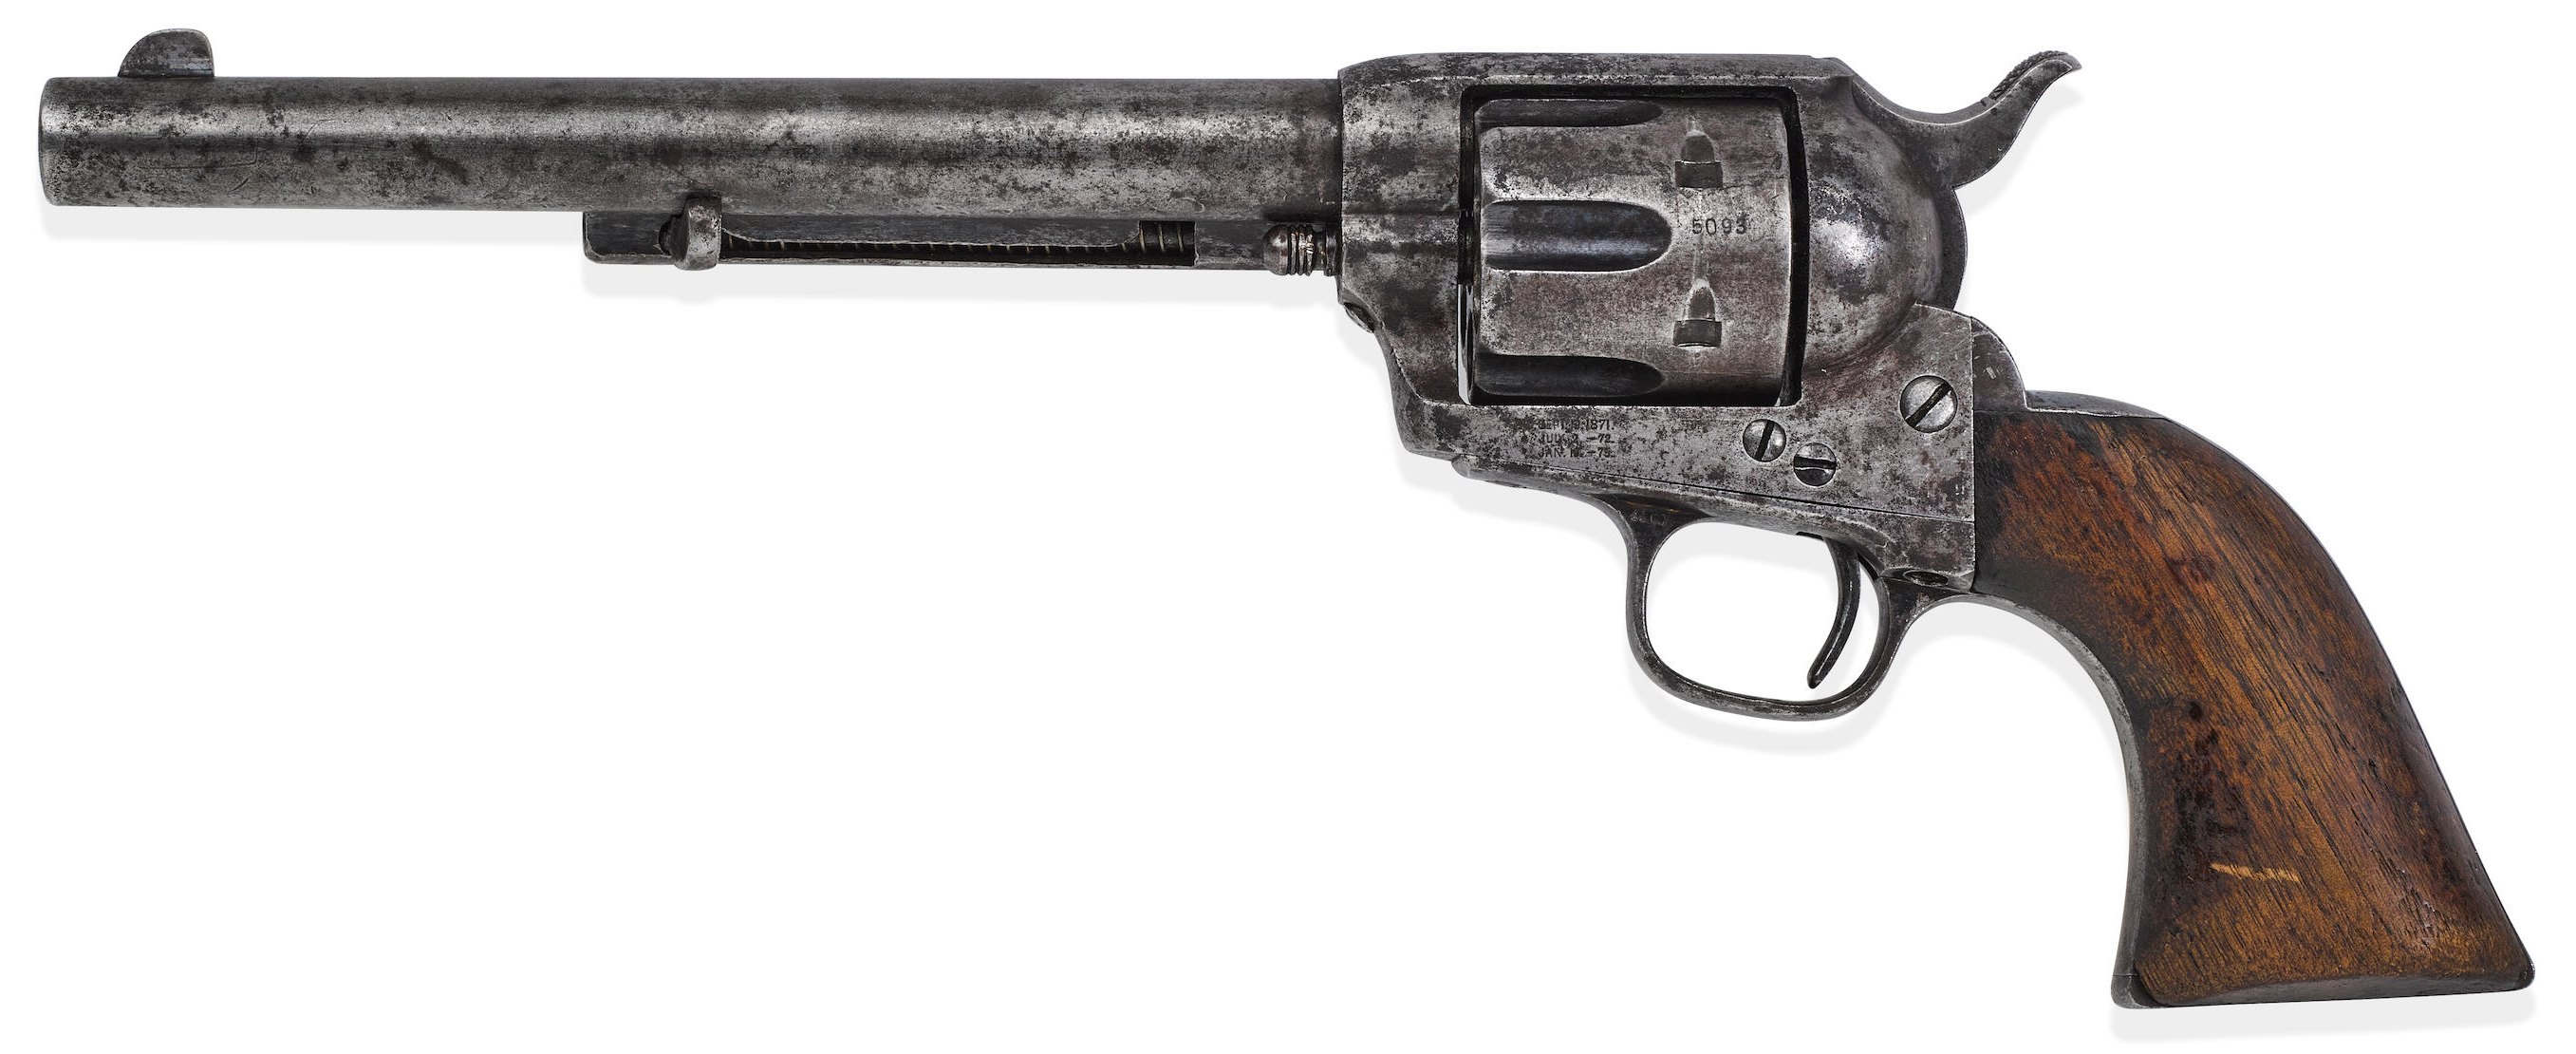 Zbraň, který usmrtila Billyho Kida, byla prodána za absurdně rekordní částku